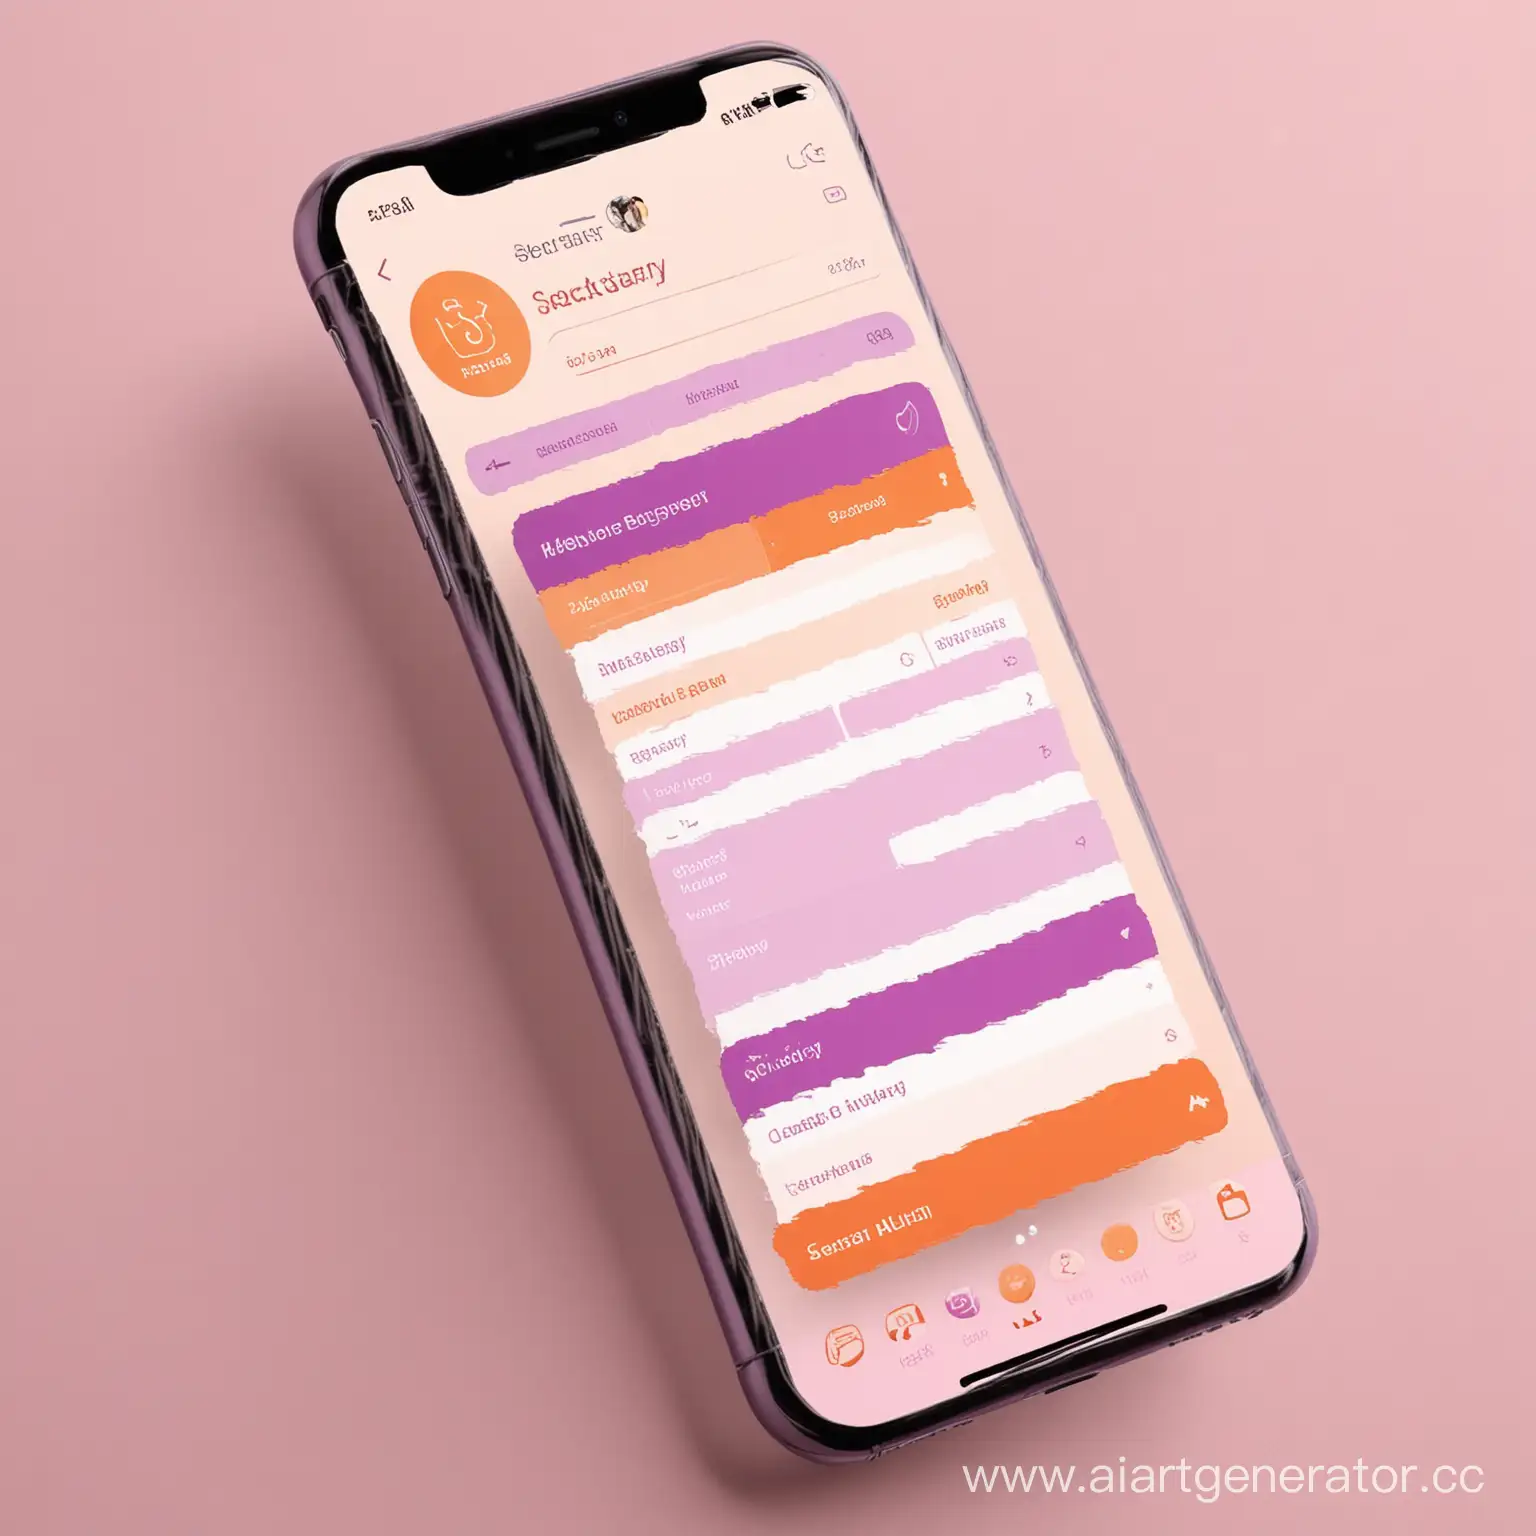 Дизайн приложения "Секретарь для жизни" в фиолетовых, оранжевых и розовых оттенках 